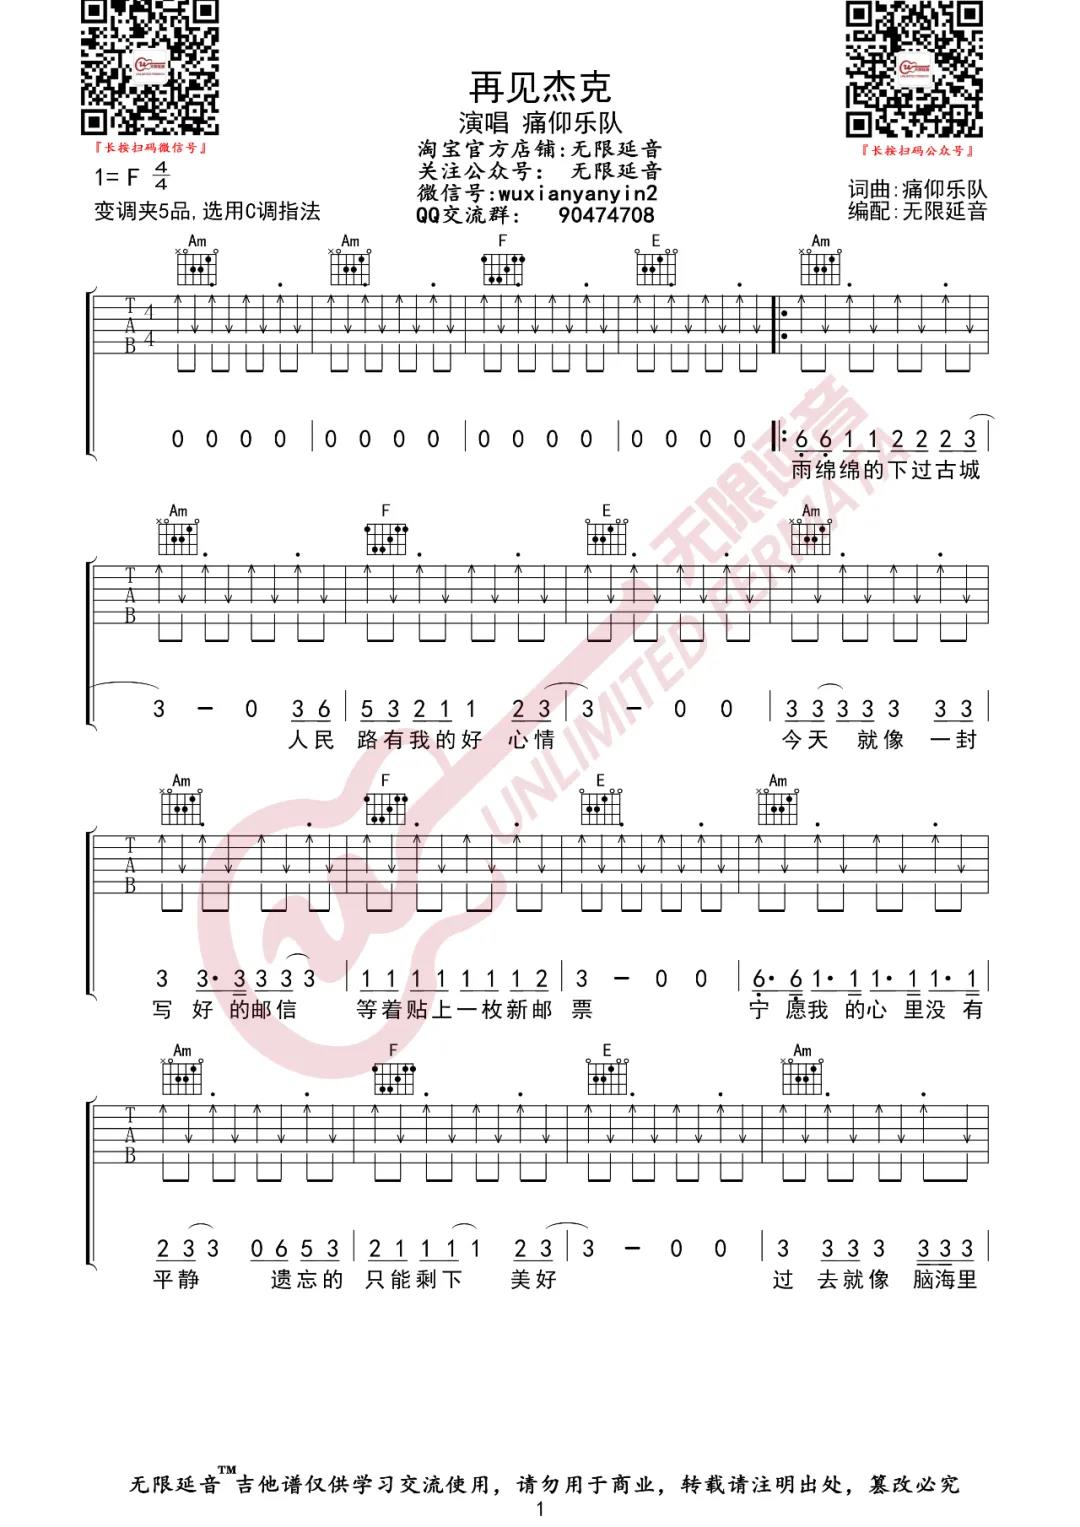 痛仰乐队《再见杰克》吉他谱(C调)-Guitar Music Score